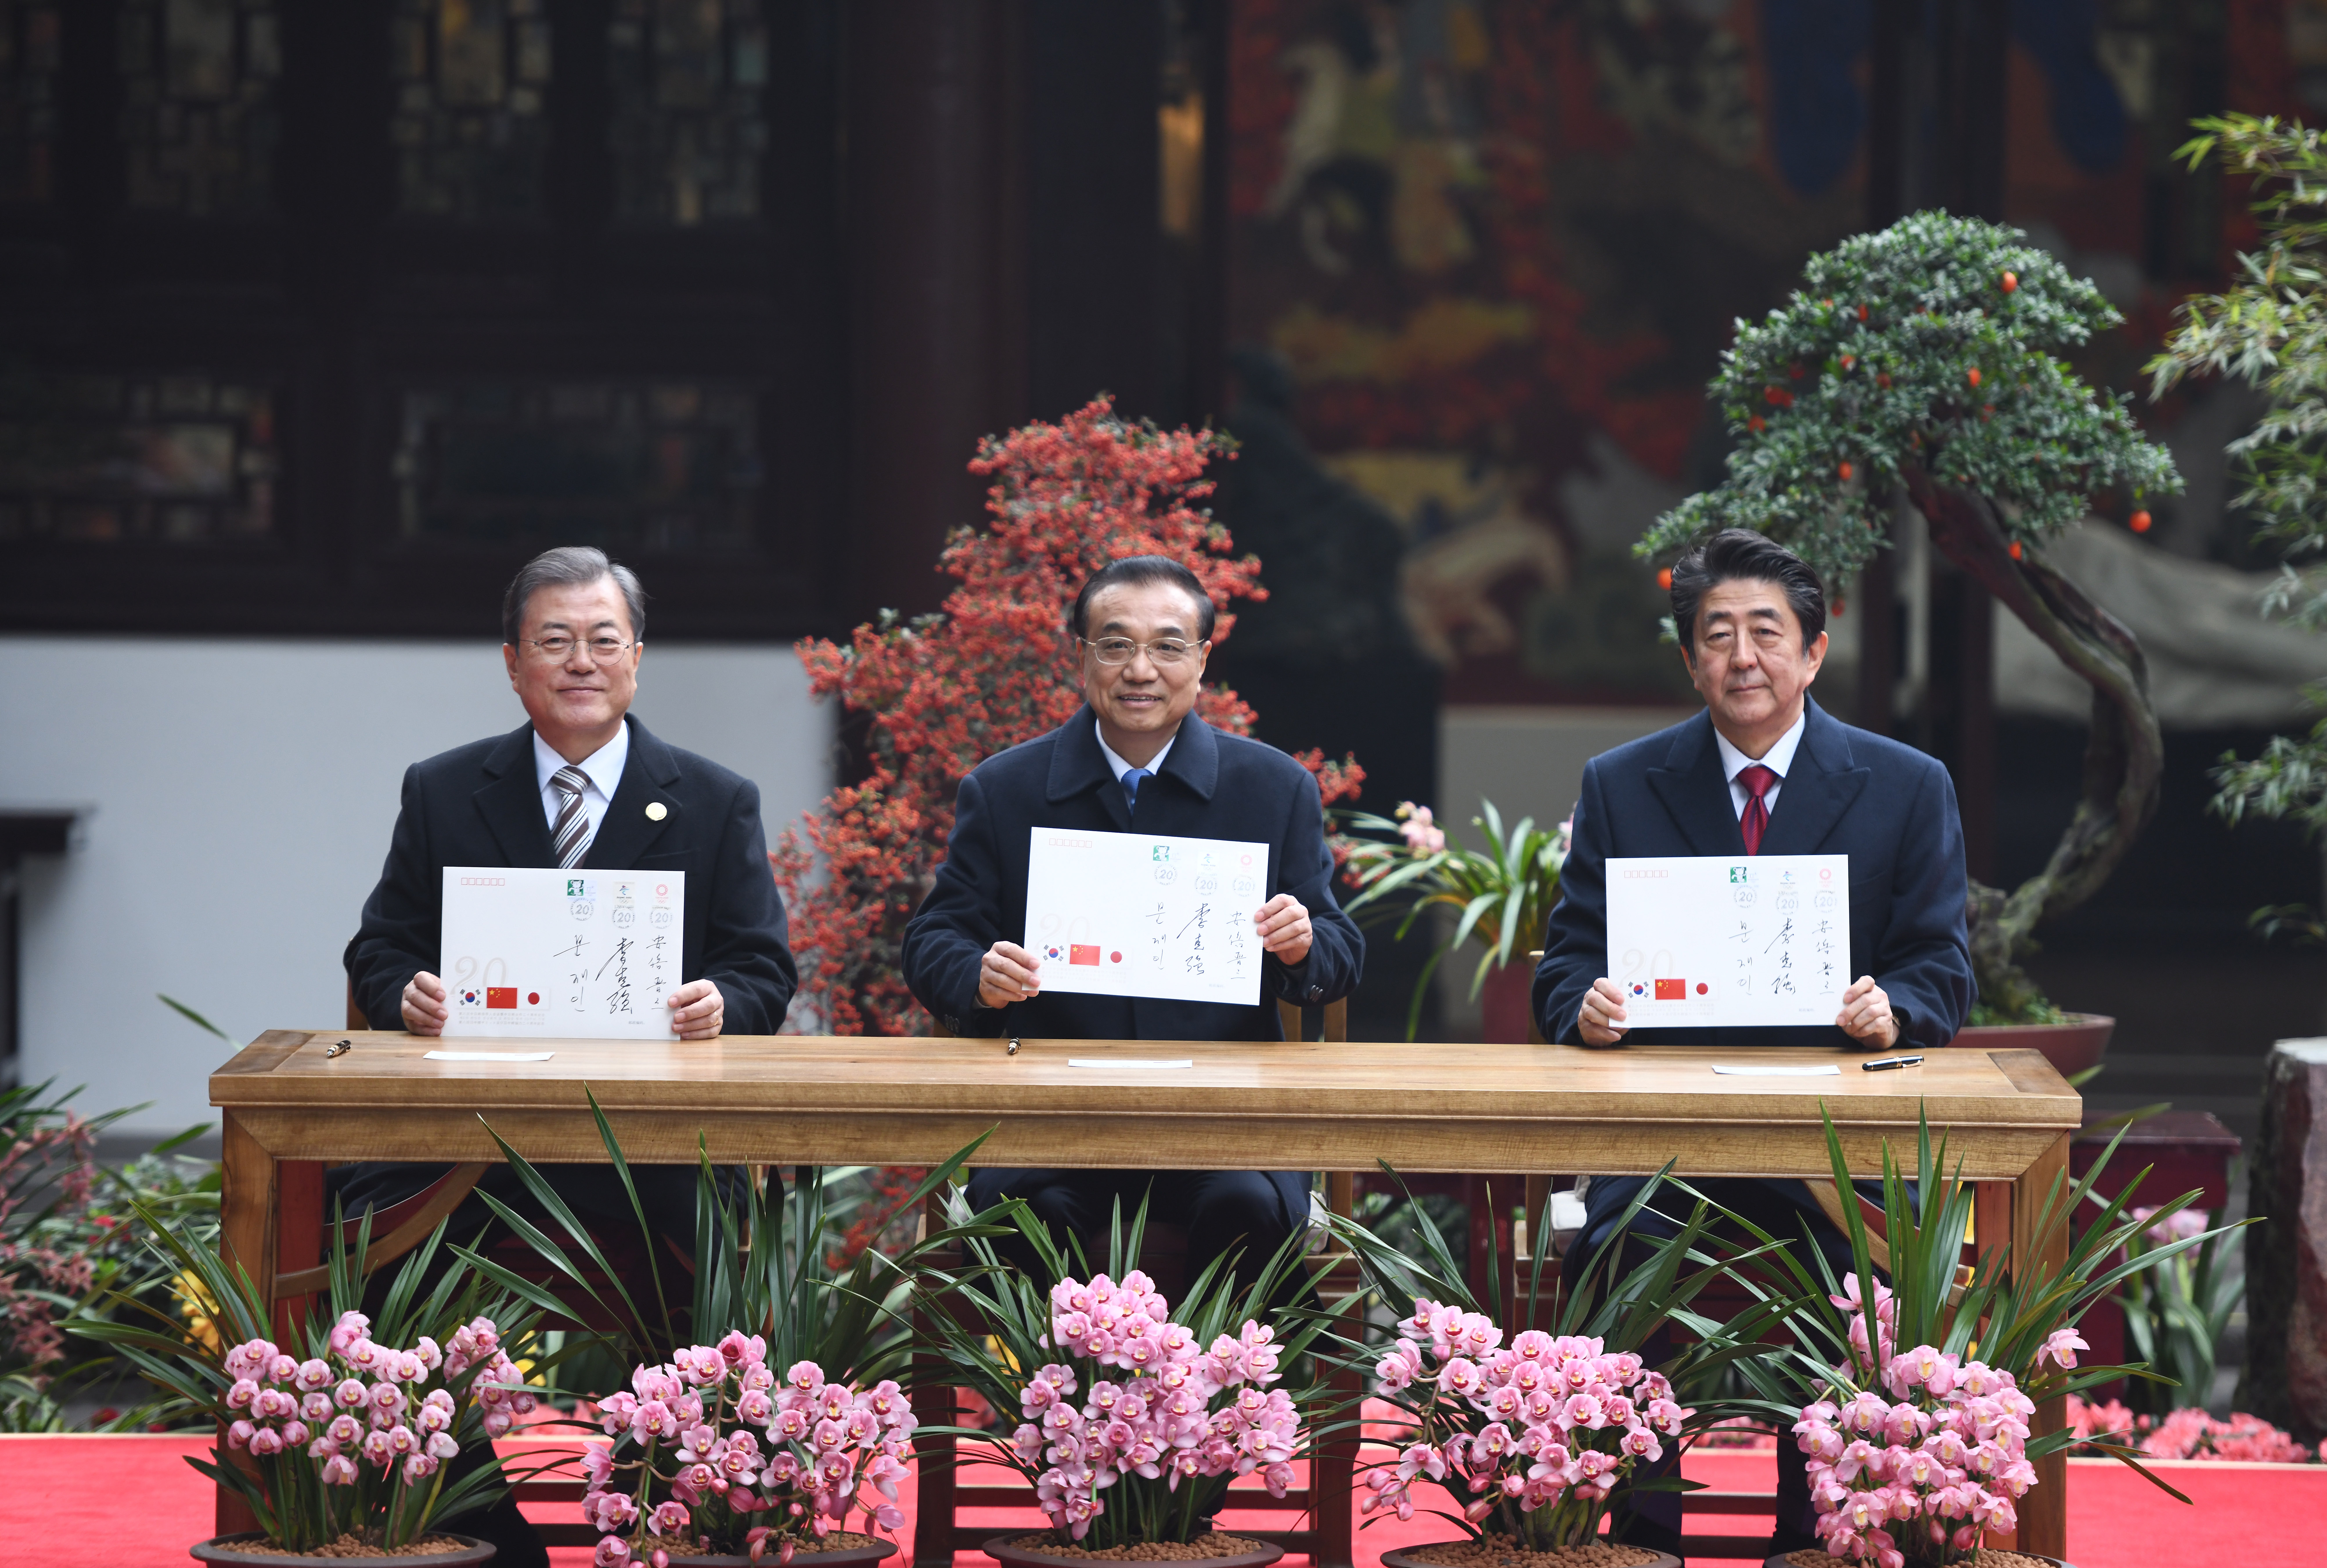 中日韩三国领导人一起去杜甫草堂种了一棵桂花树(组图)